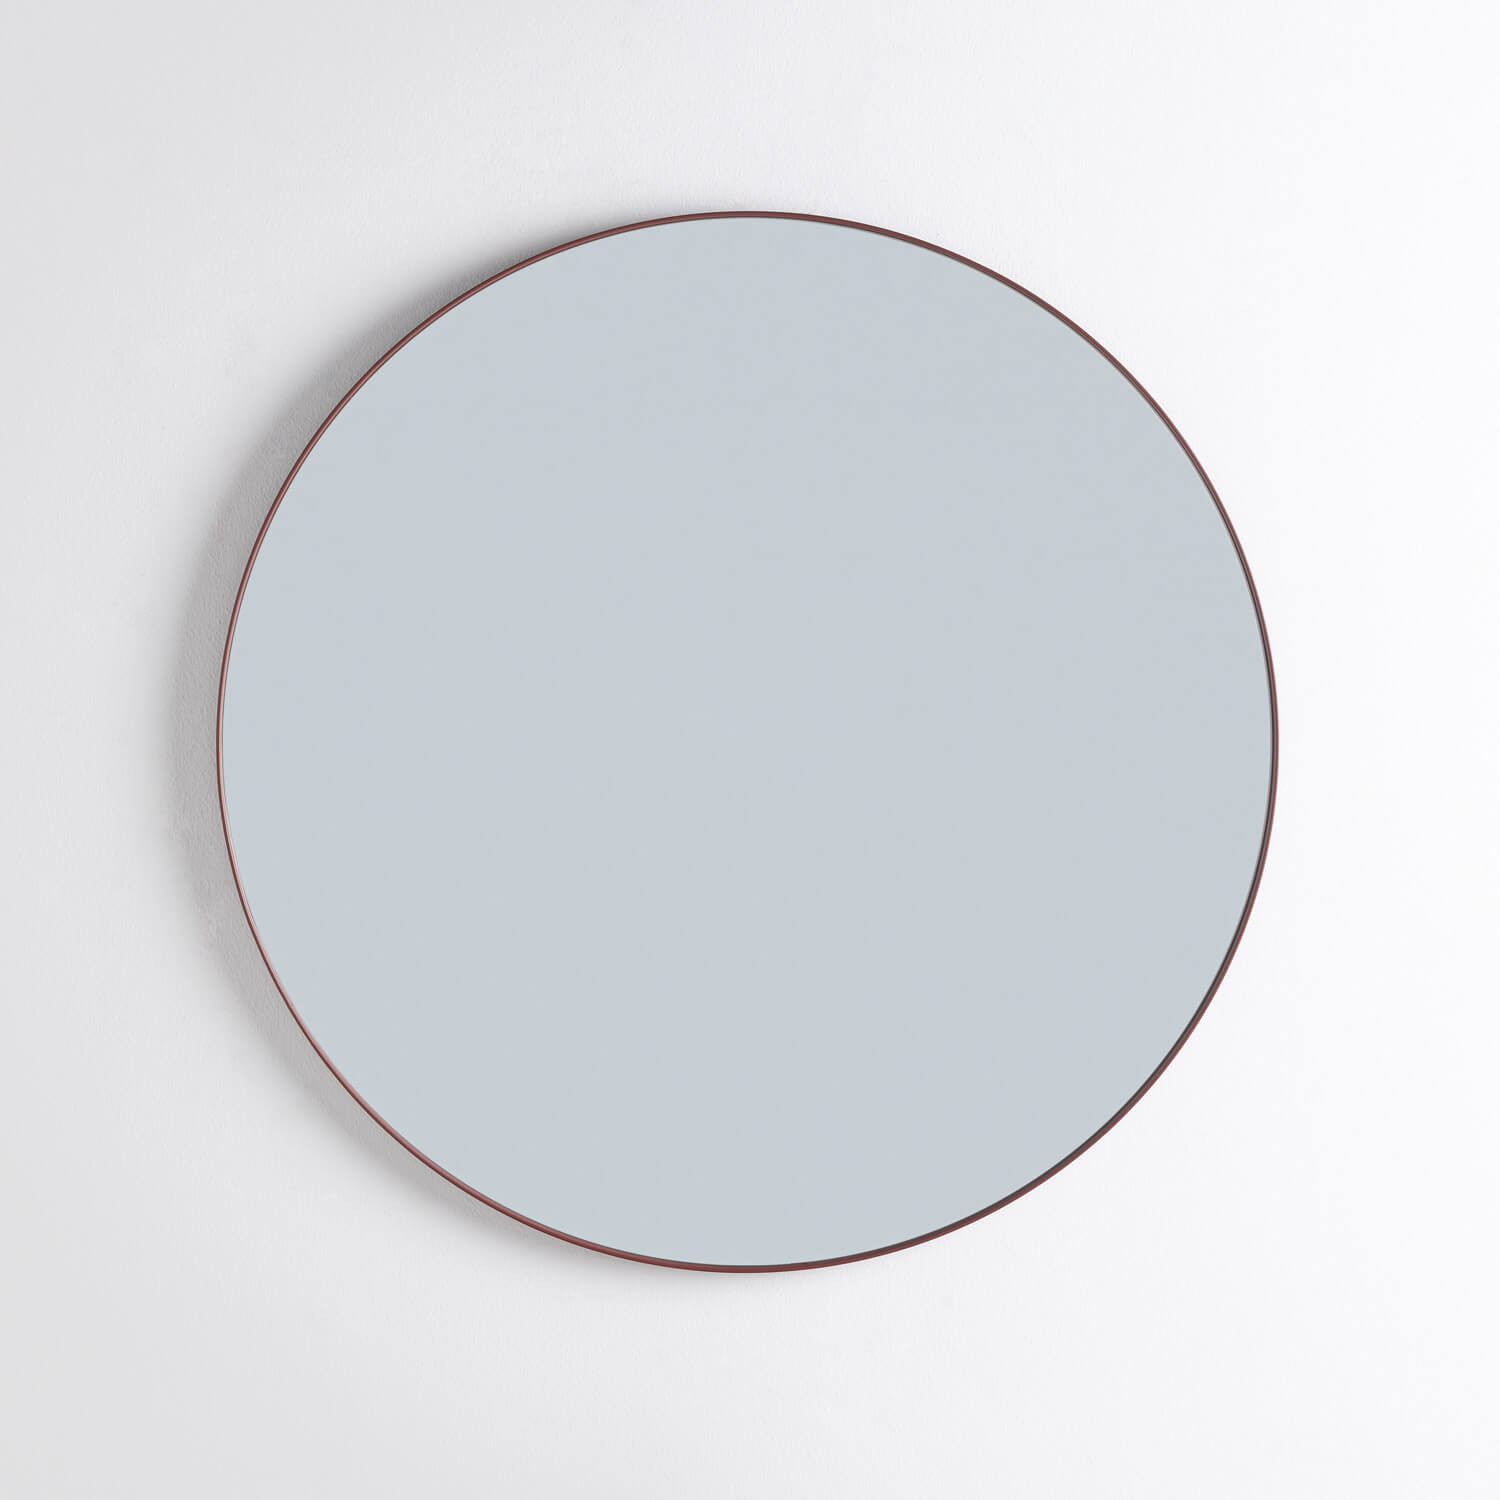 Specchio da Parete in Acciaio (Ø80 cm) Kalel, immagine della galleria 1